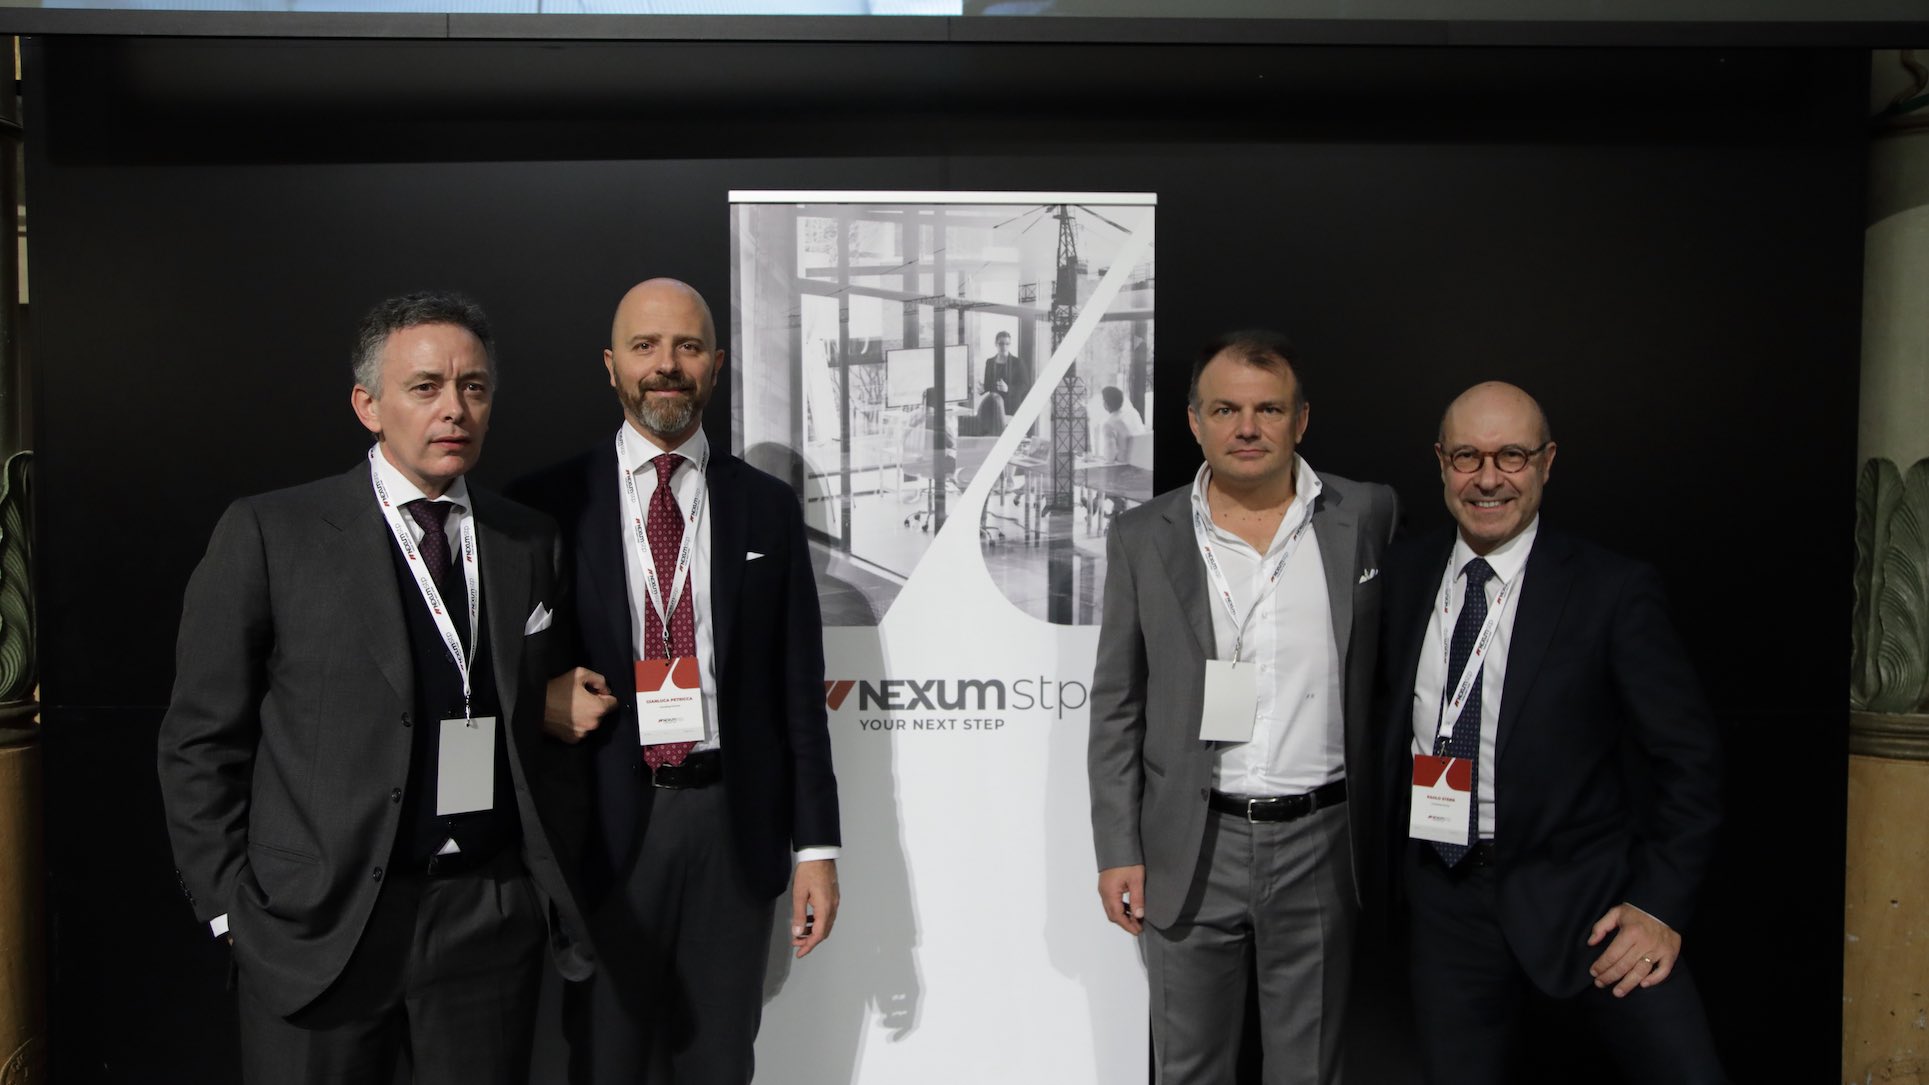 NexumStp entra nella classifica FT1000 delle società in più rapida crescita in Europa